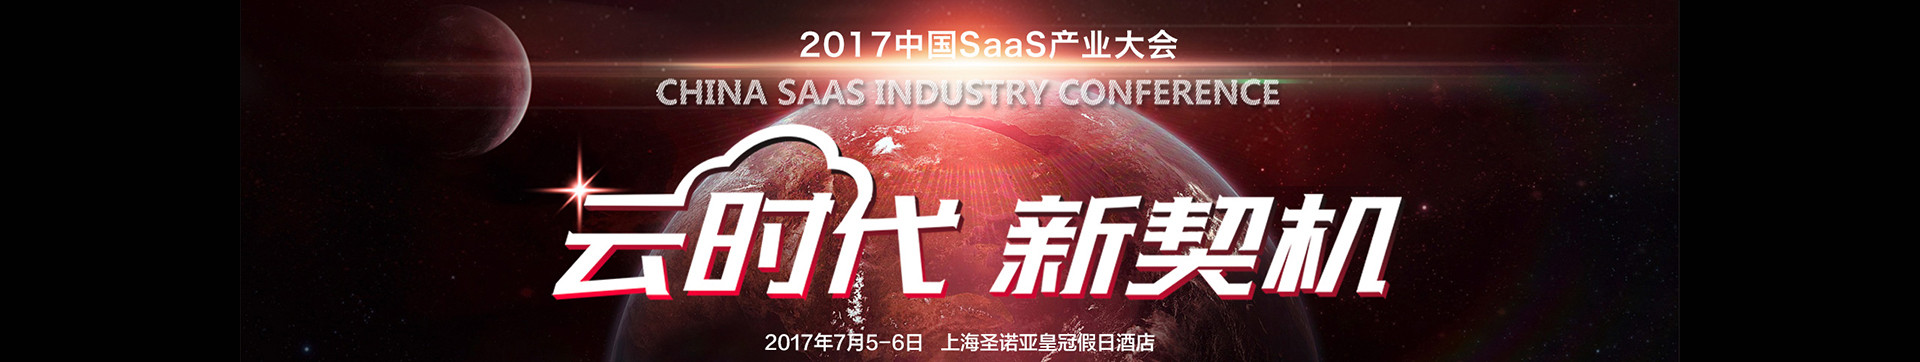 2017中国SaaS产业大会 CSIC